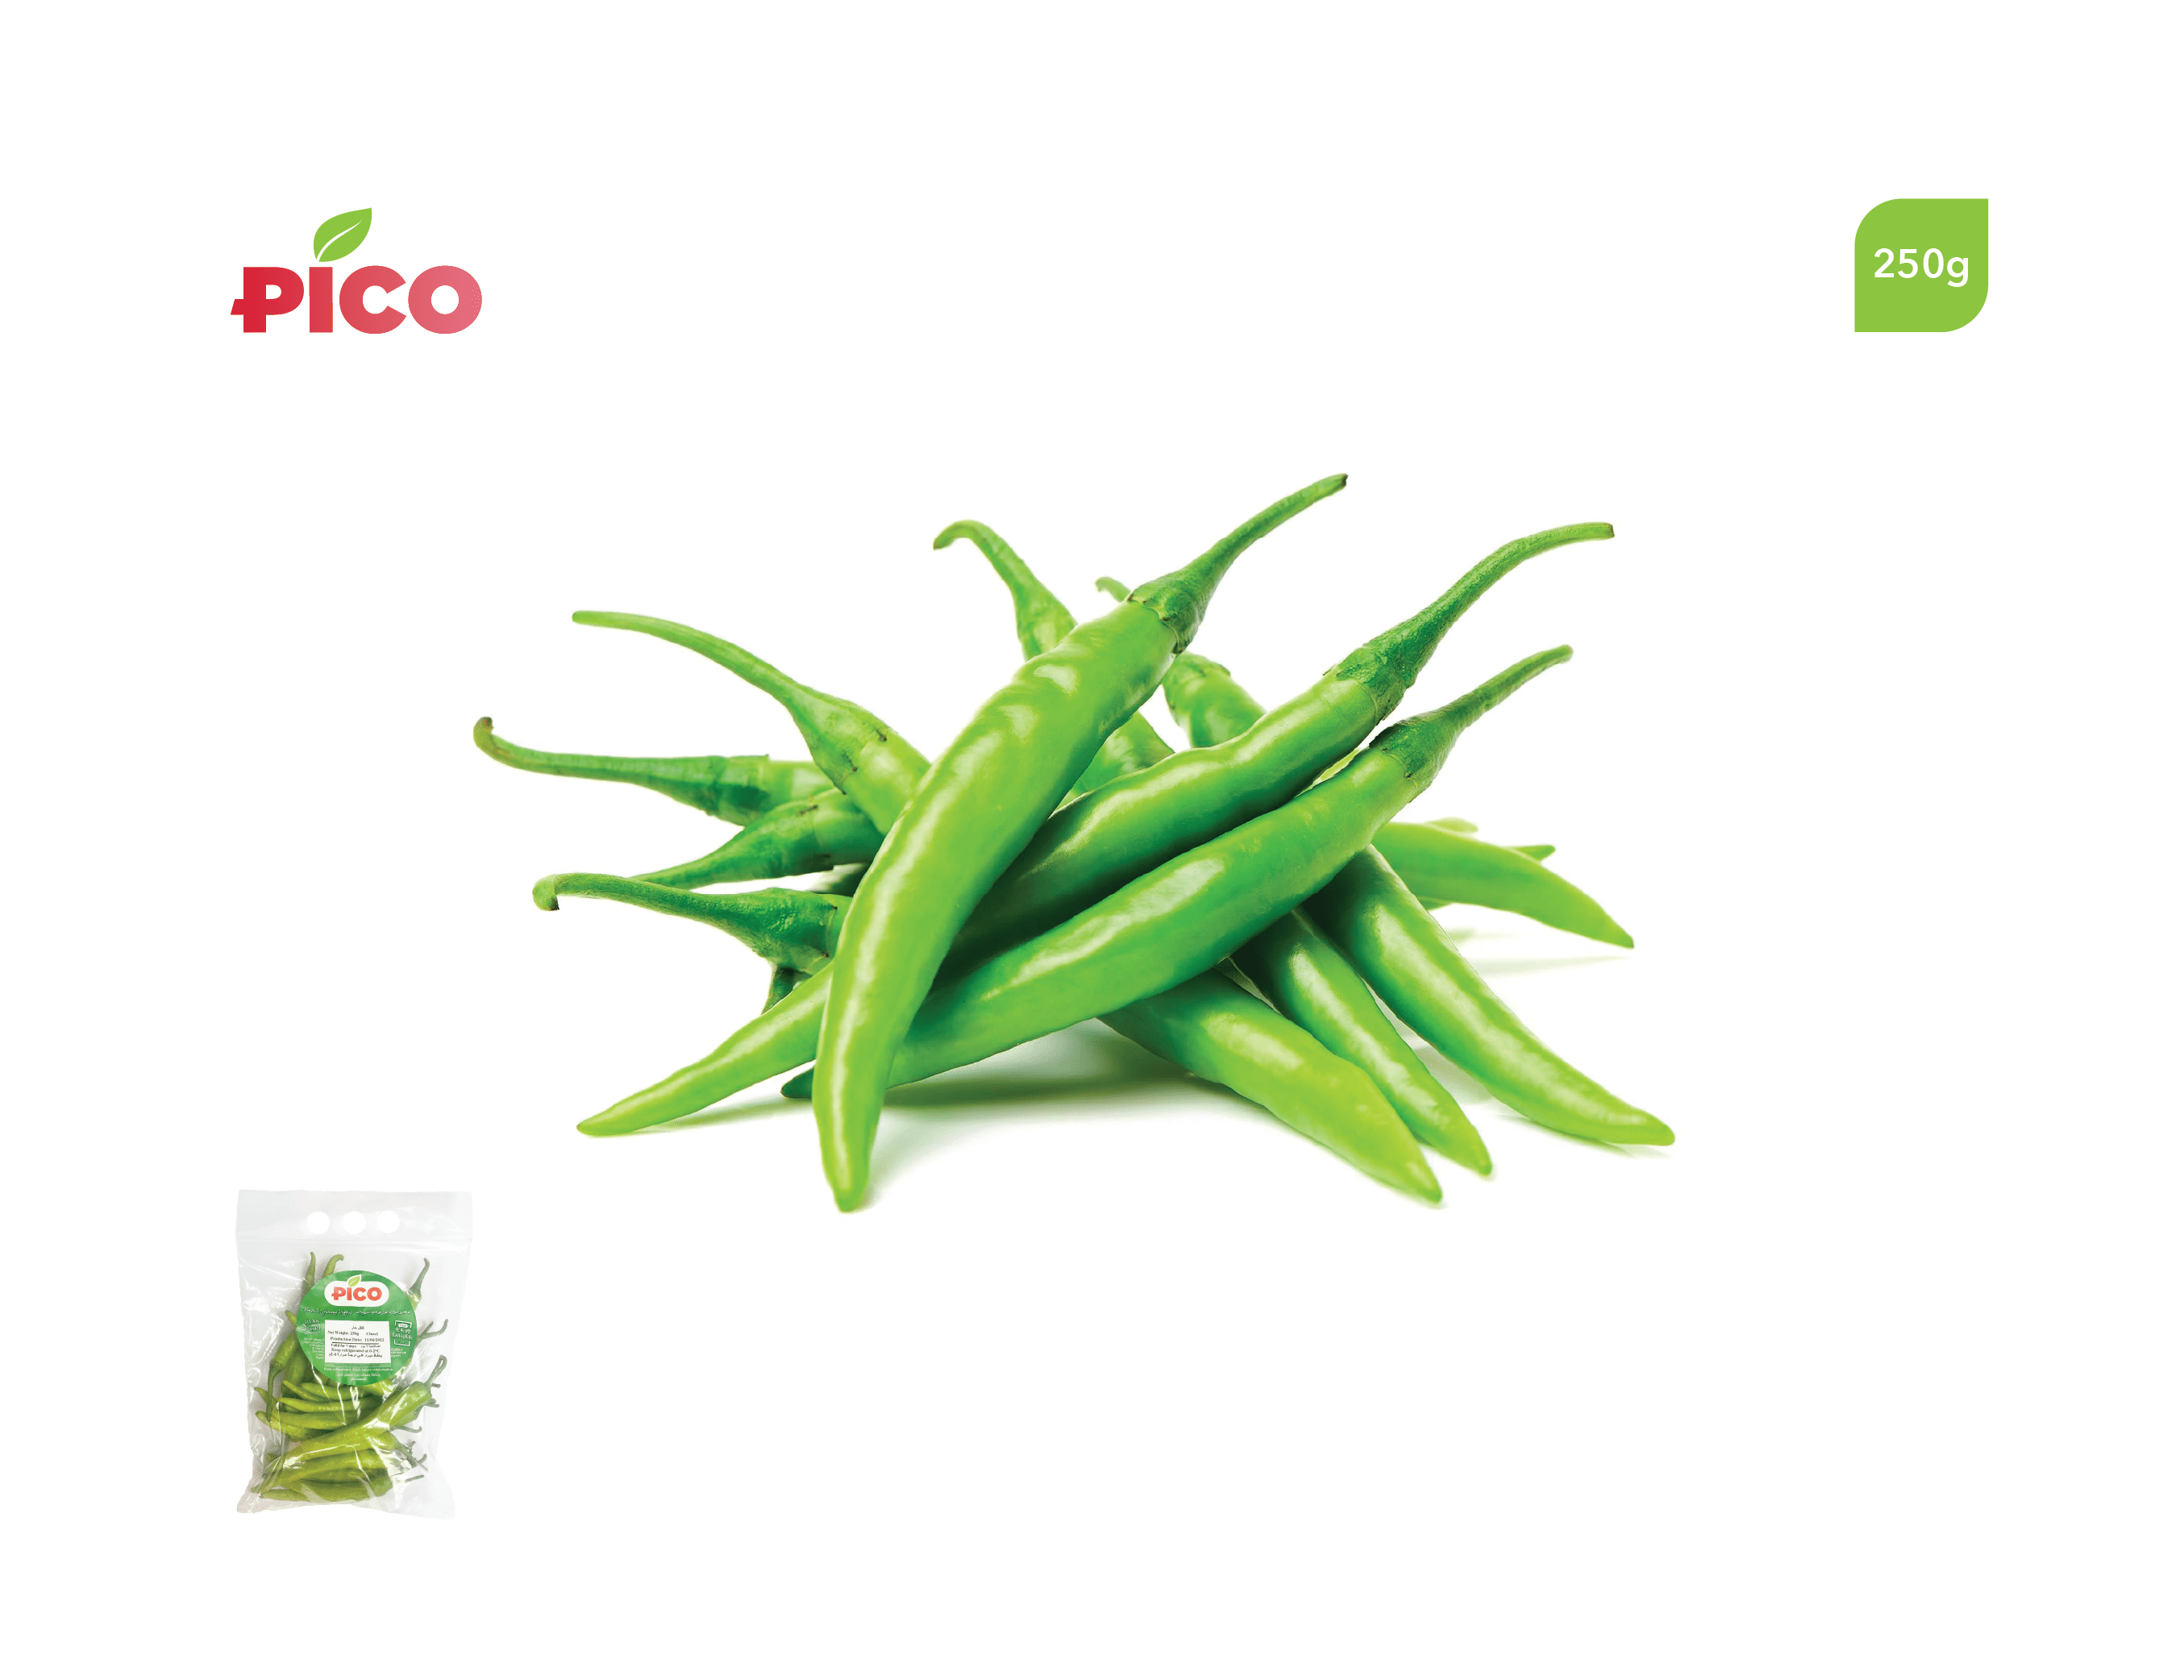 Green Chili Pepper – 250g